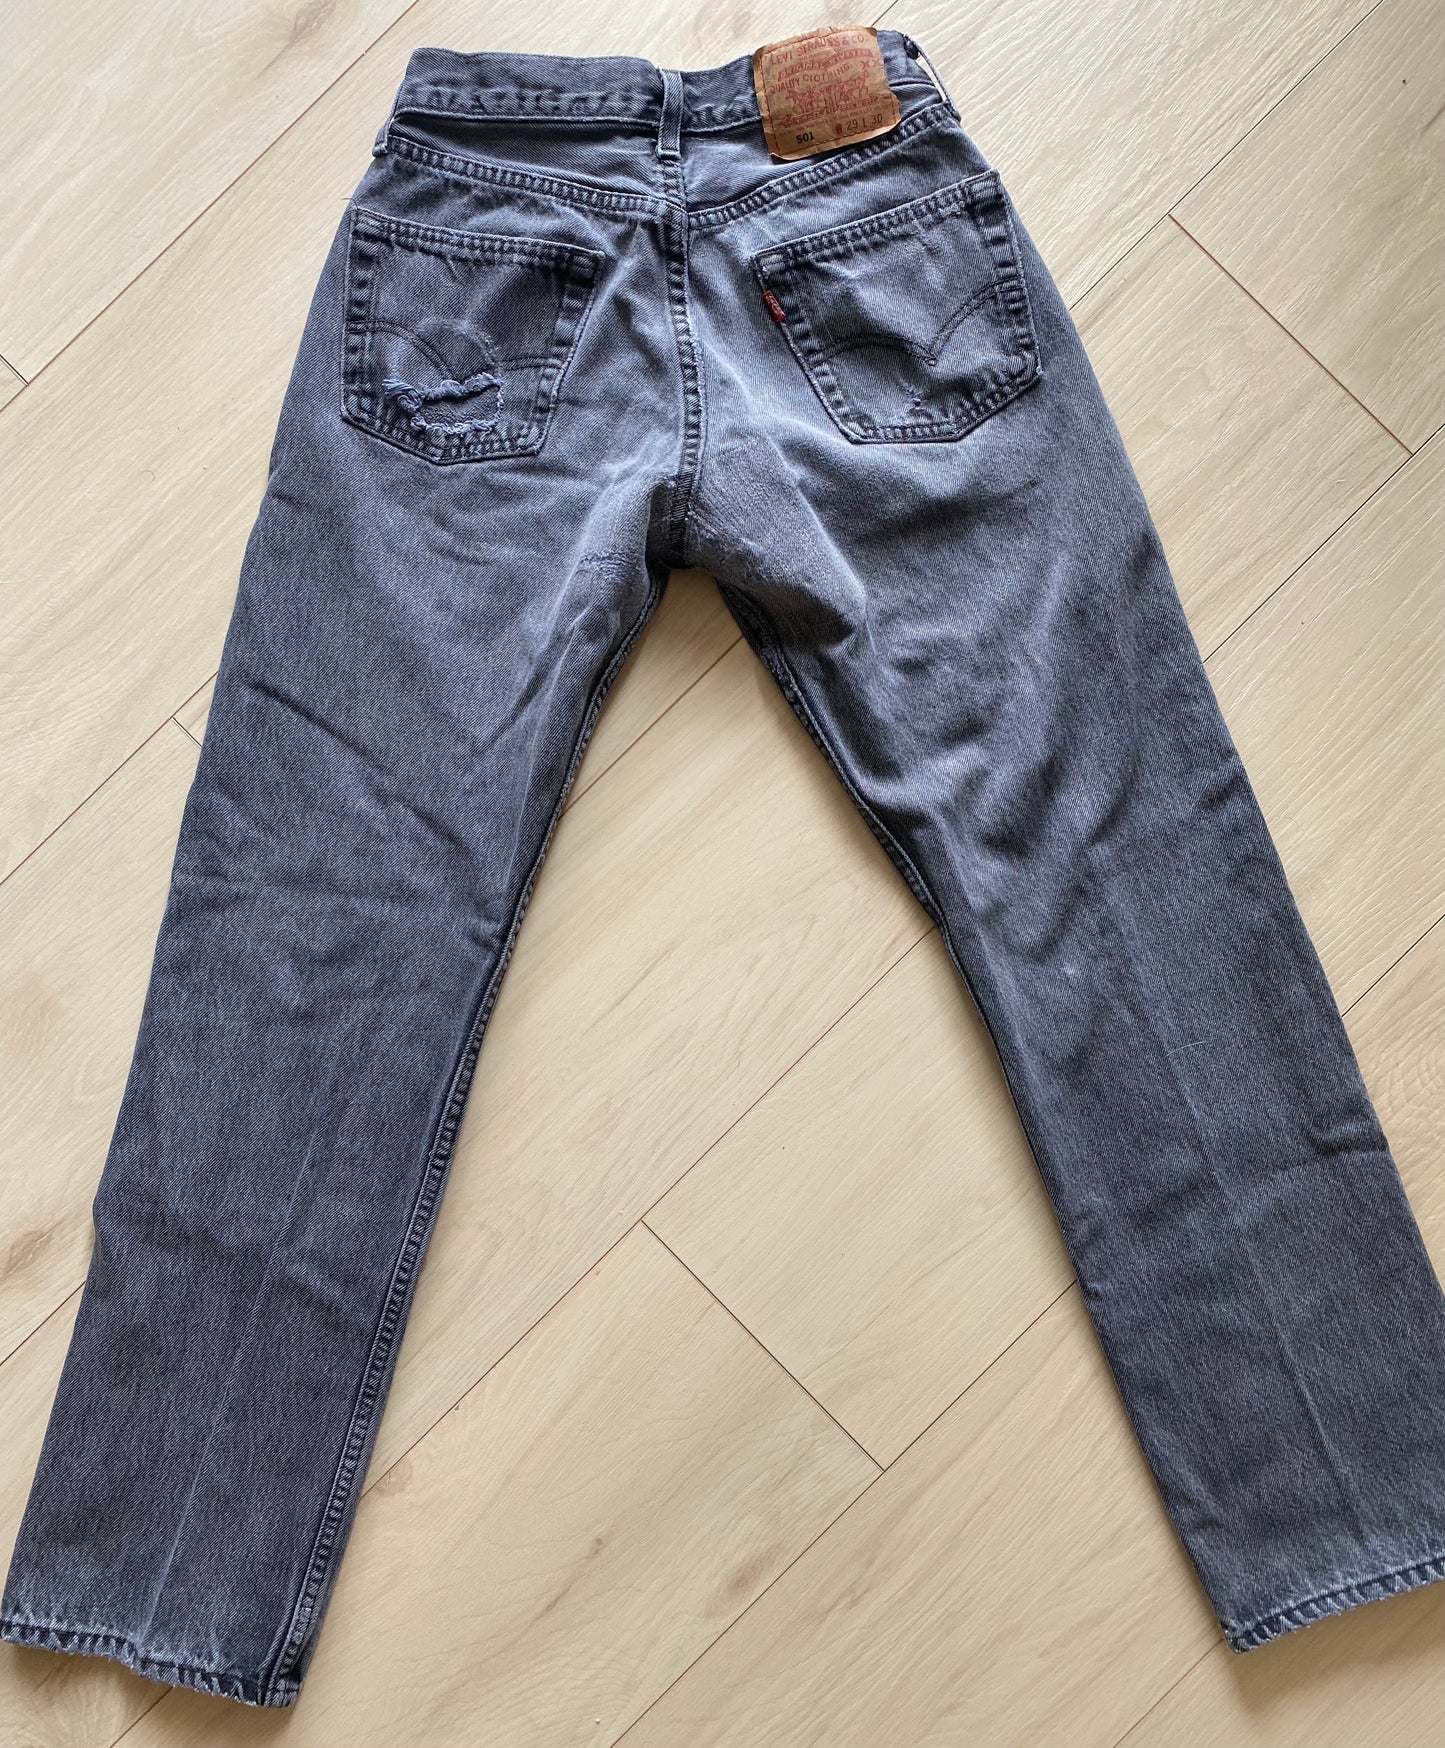 Size 25/26 Levi’s 501 jeans